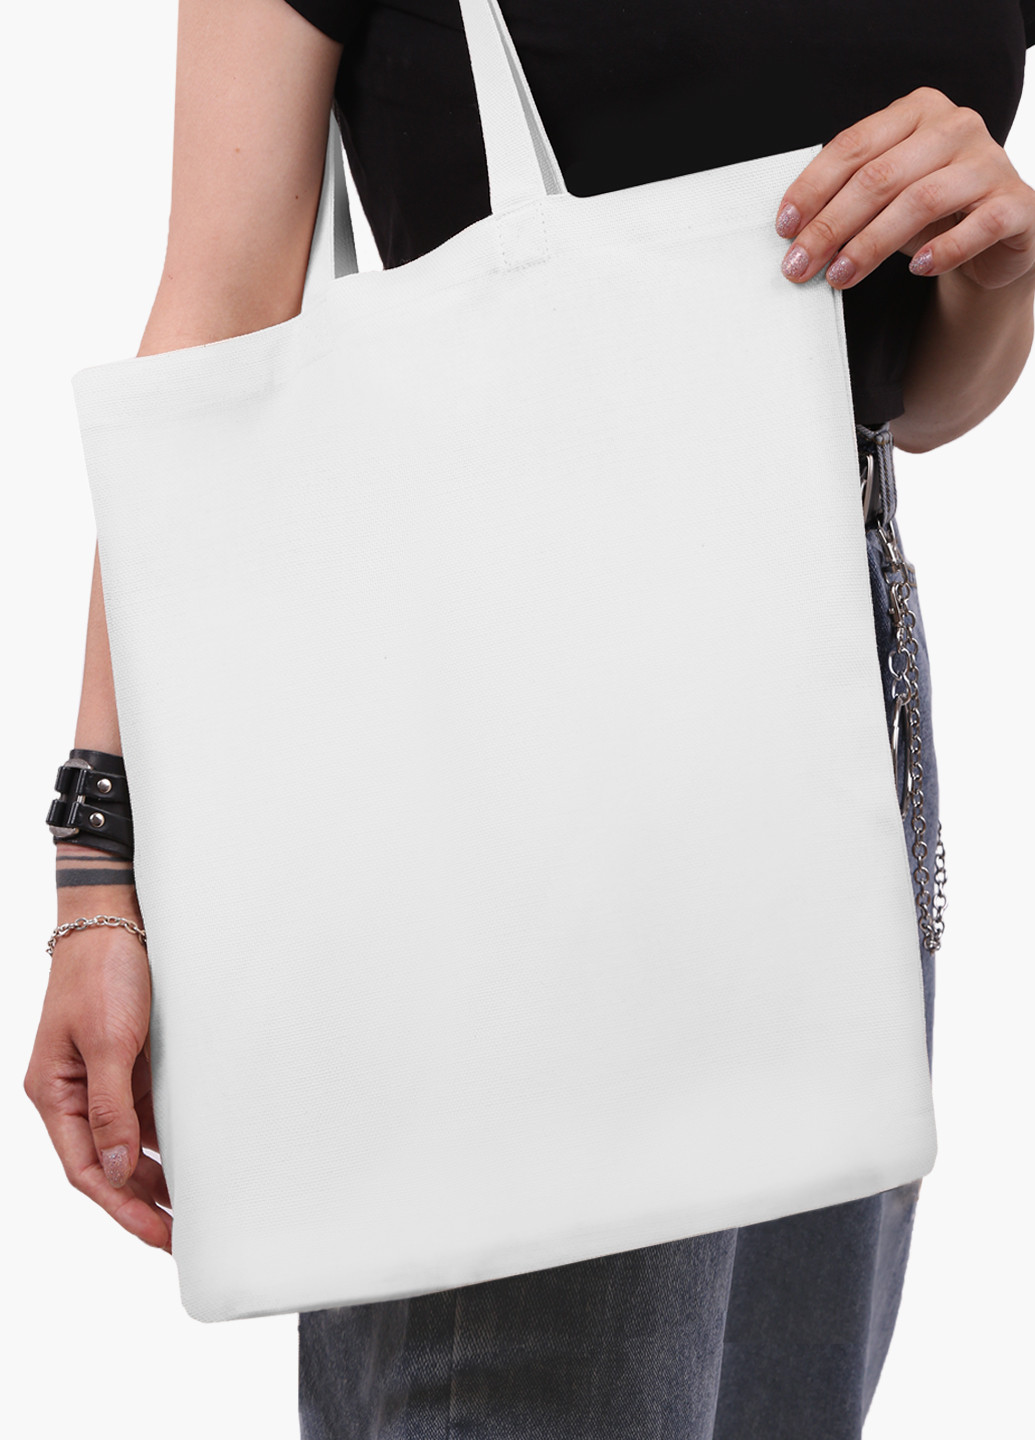 Эко сумка шоппер белая Без принта (No print) (9227-1094-WT2) Еко сумка шоппер біла 41*35 см MobiPrint (225541015)